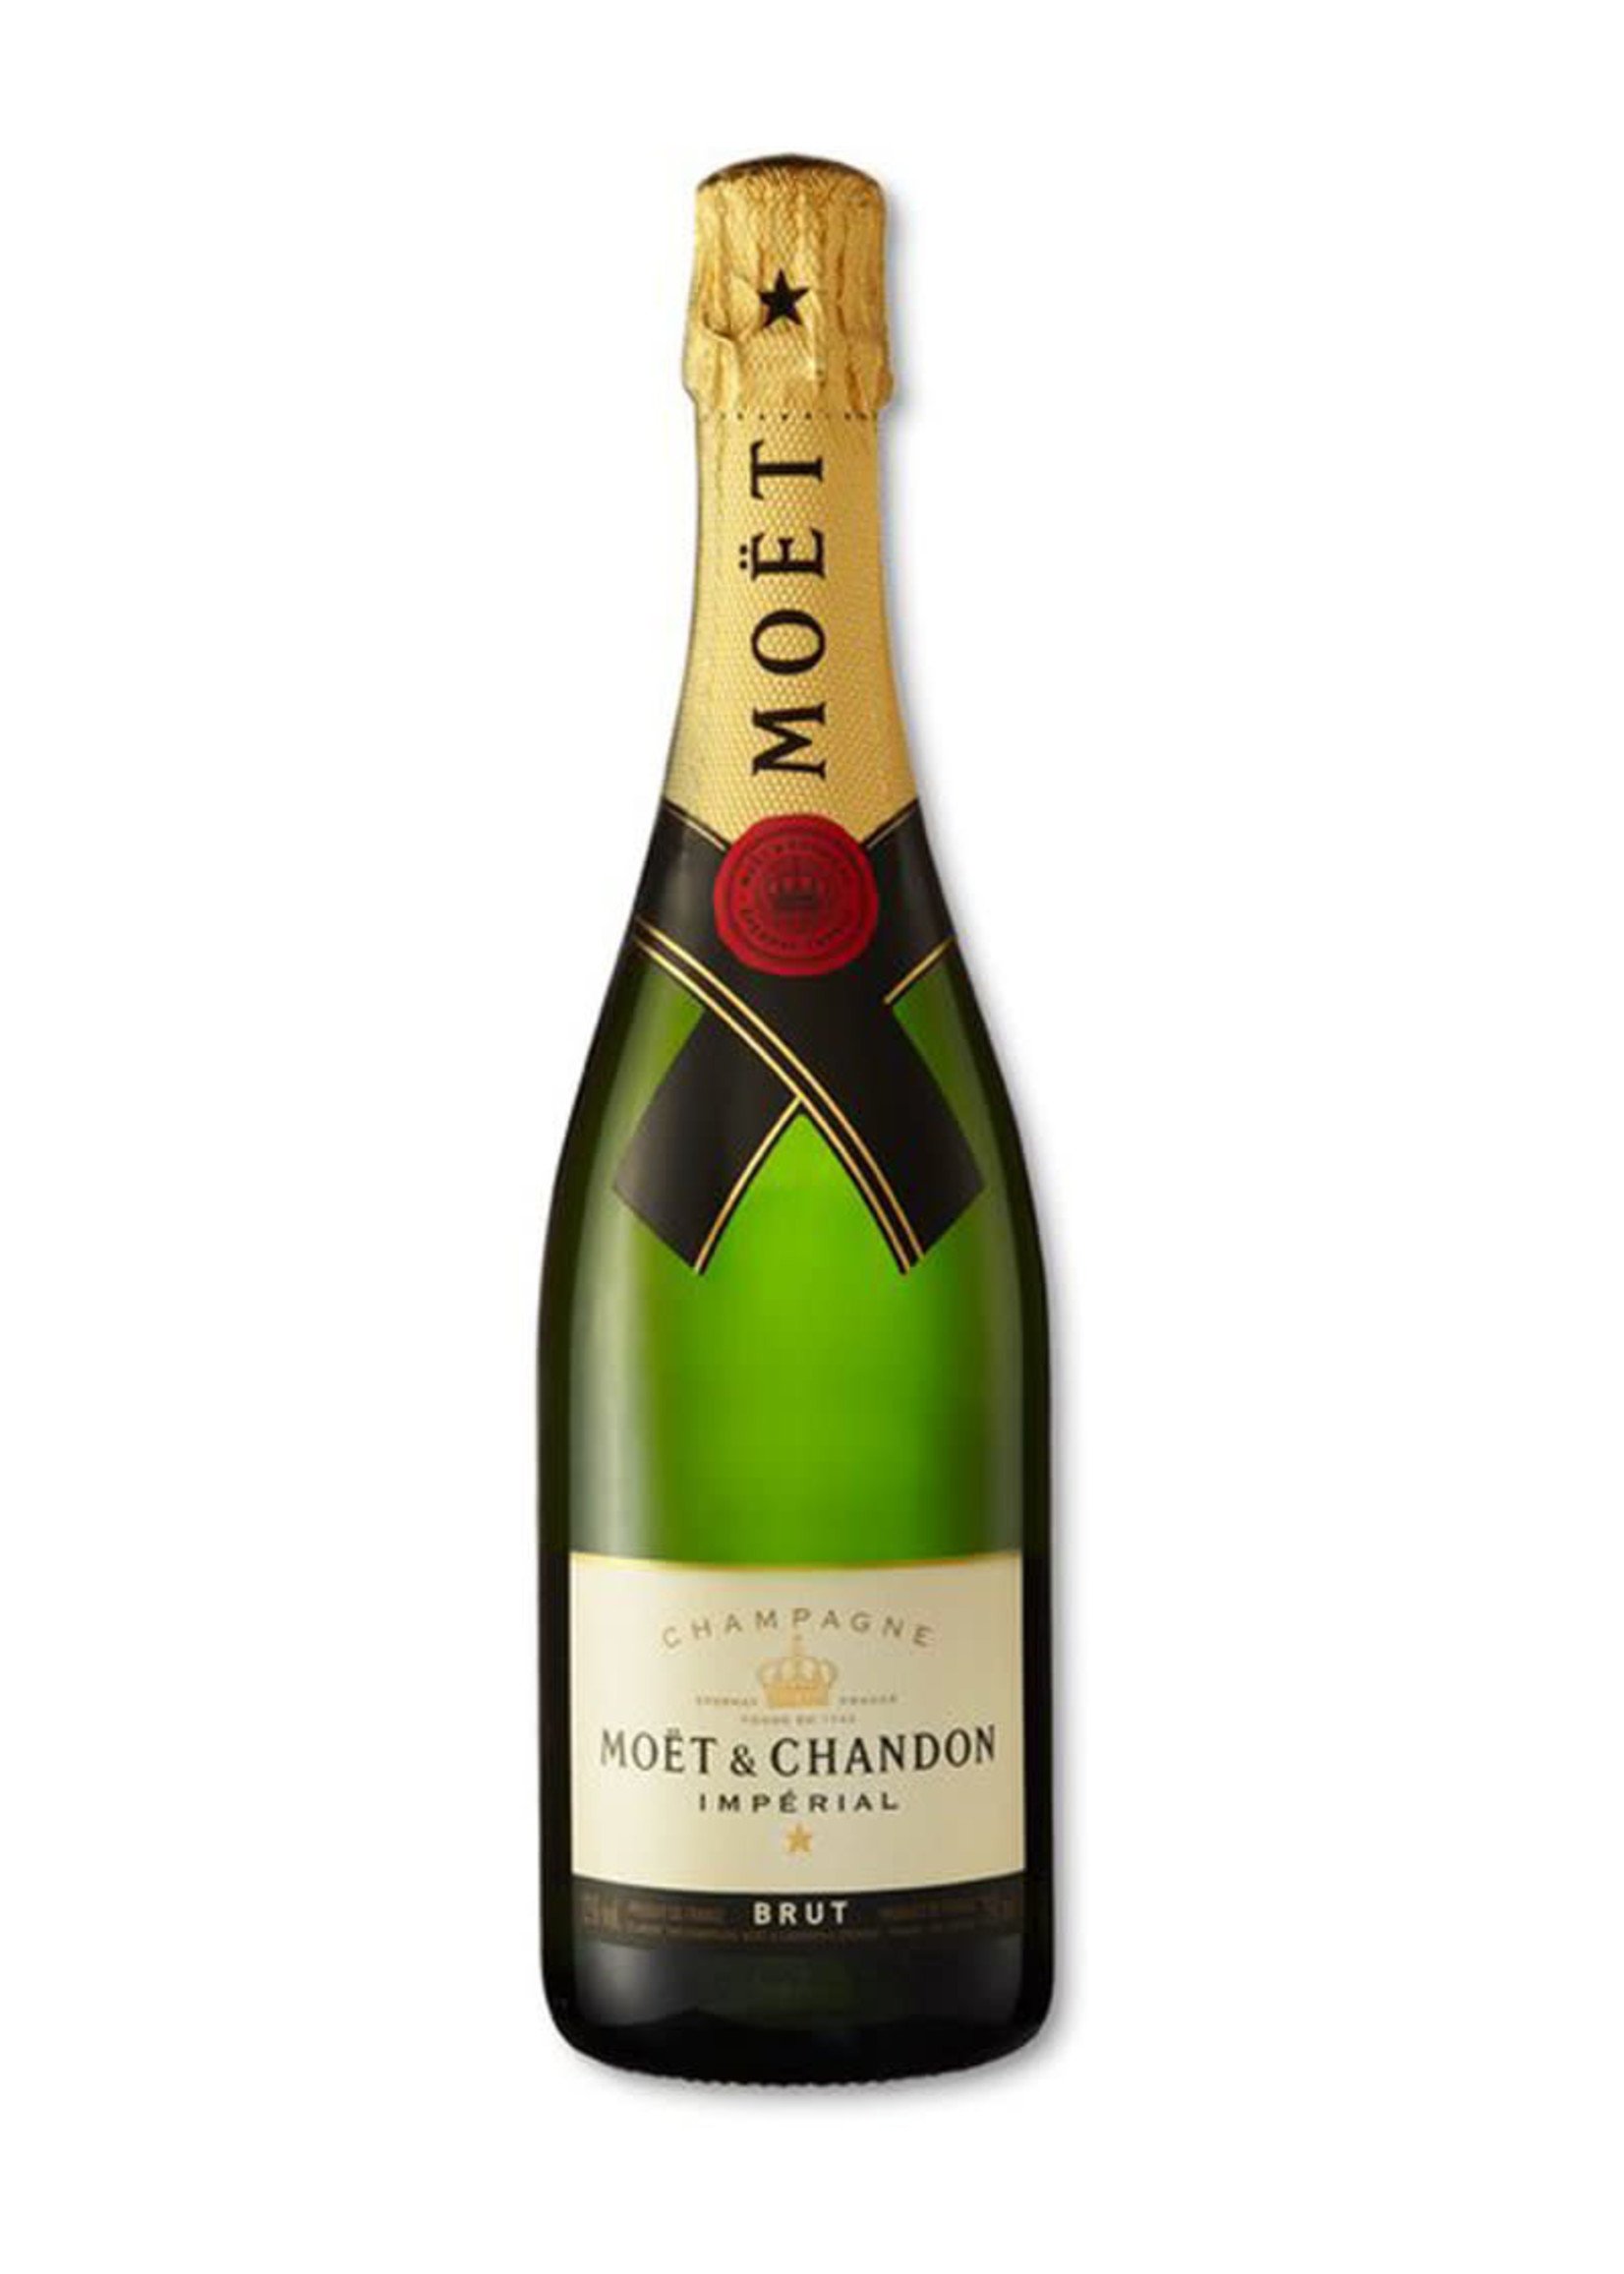 Moët & Chandon Imperial Brut Champagne, France